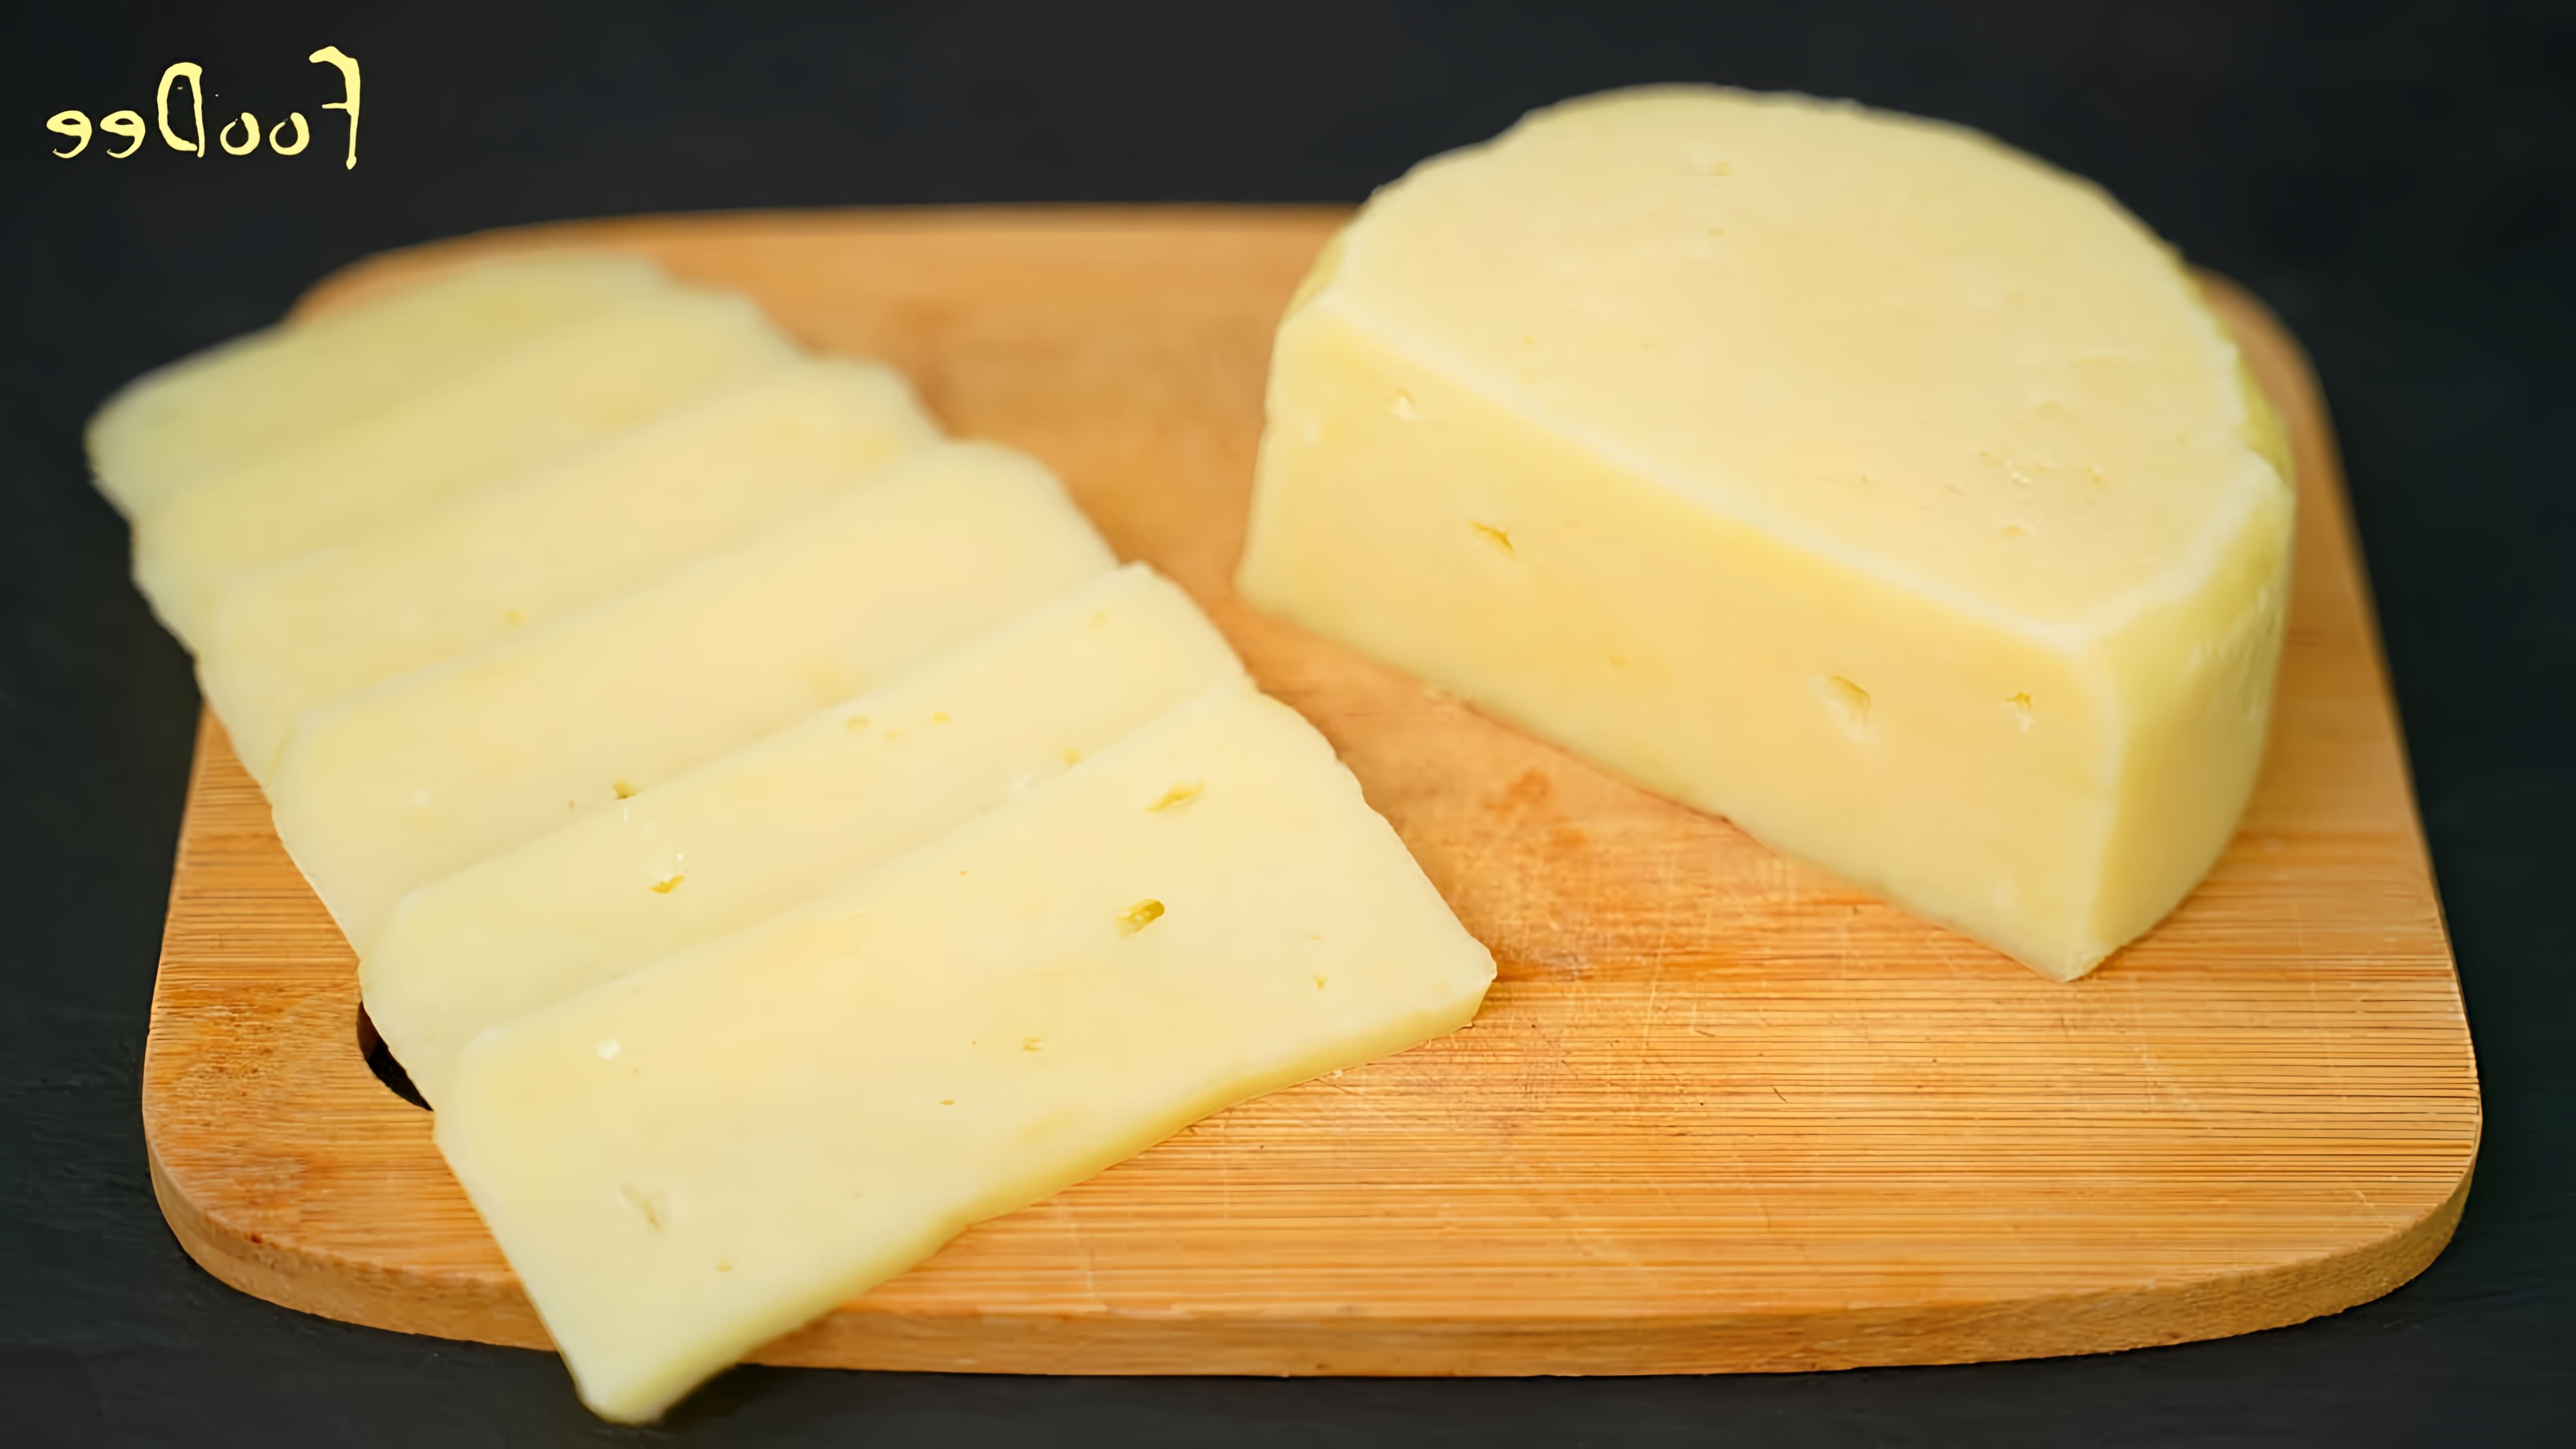 В этом видео демонстрируется процесс приготовления домашнего сыра из натуральных творога и молока всего за 15 минут